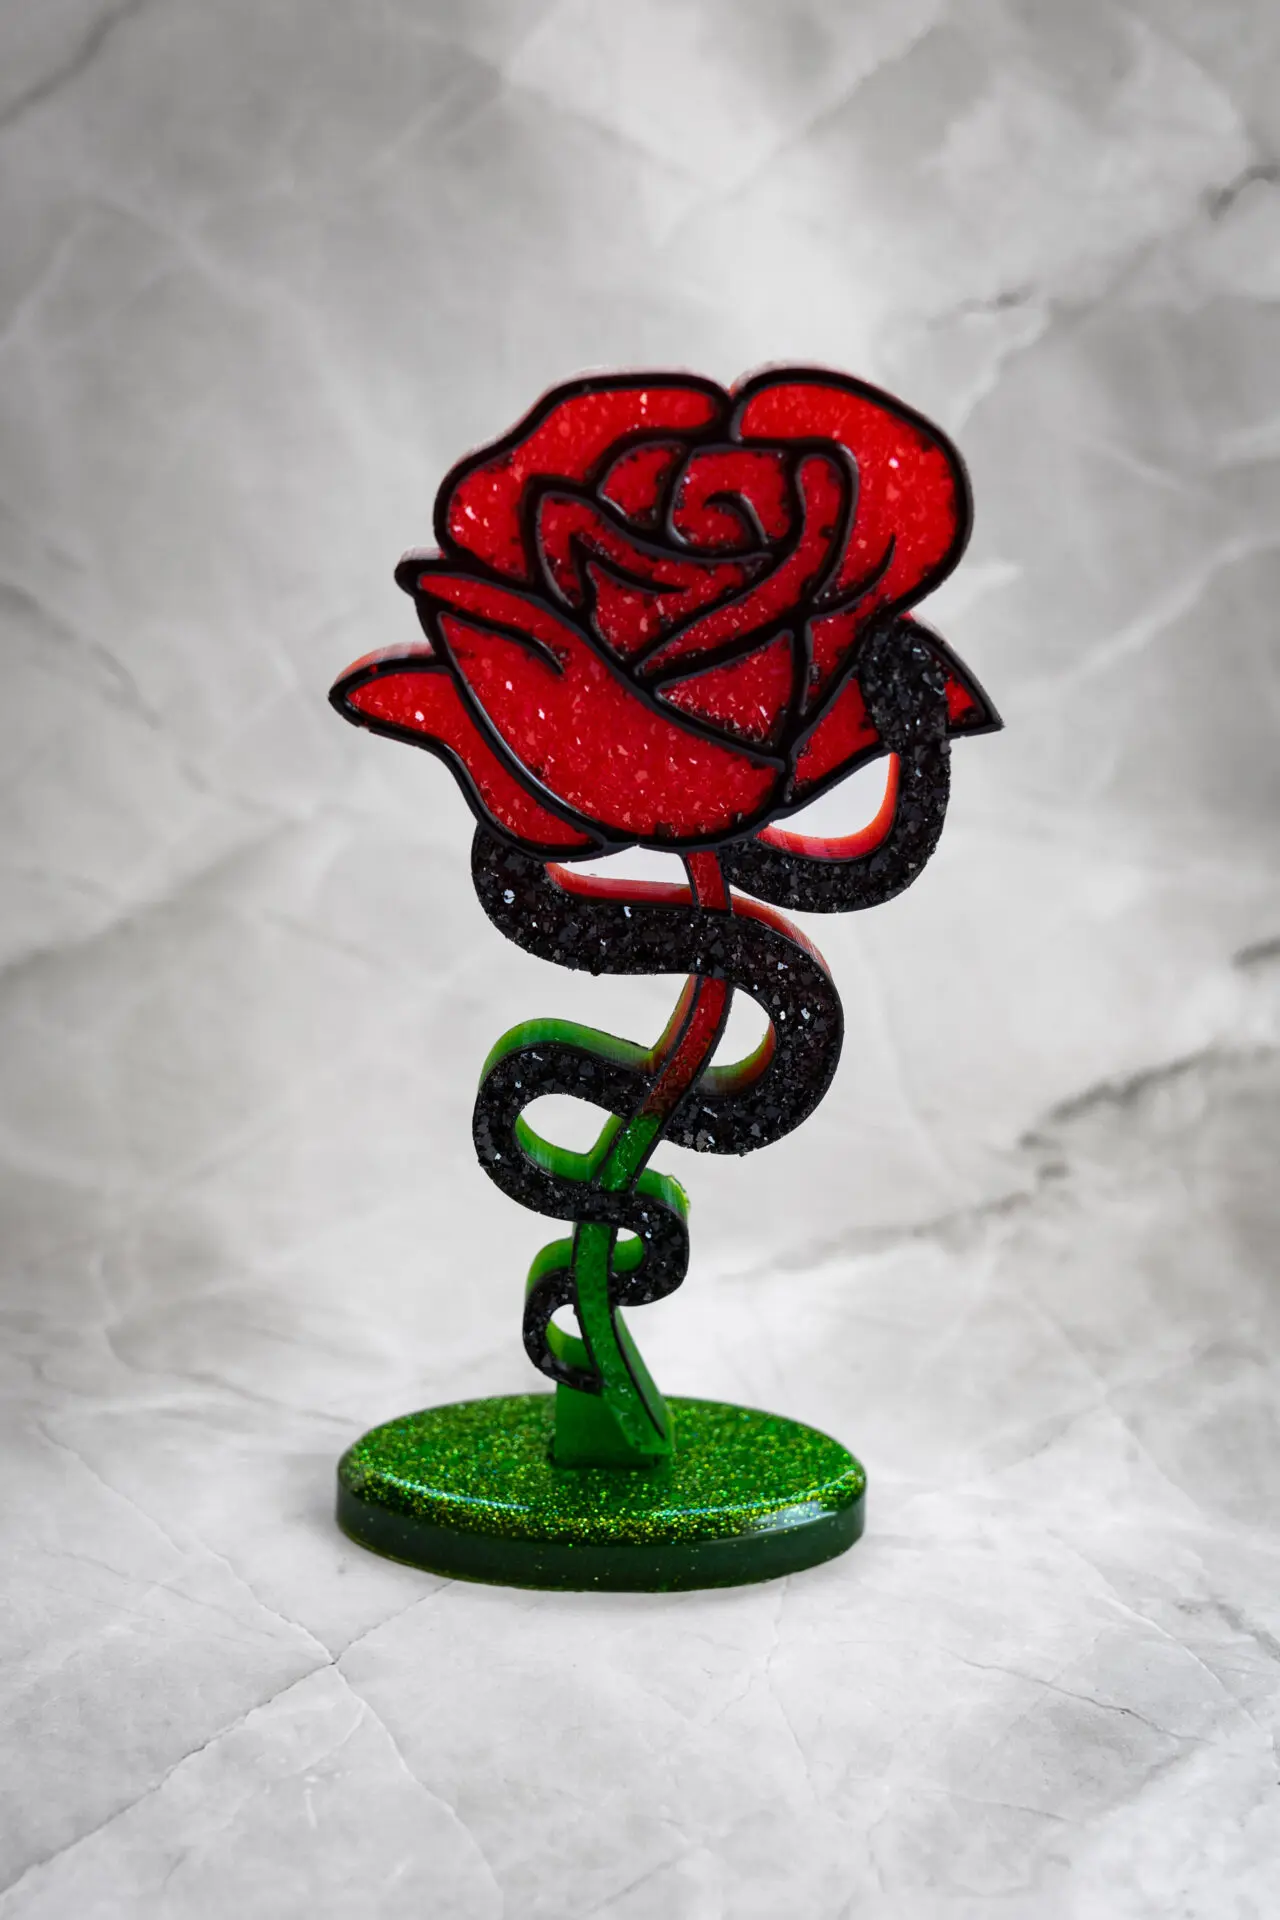 Rose diamant vert rouge noir - Boutique en ligne d'idées cadeau et de décoration résine jesmonite badges et stickers